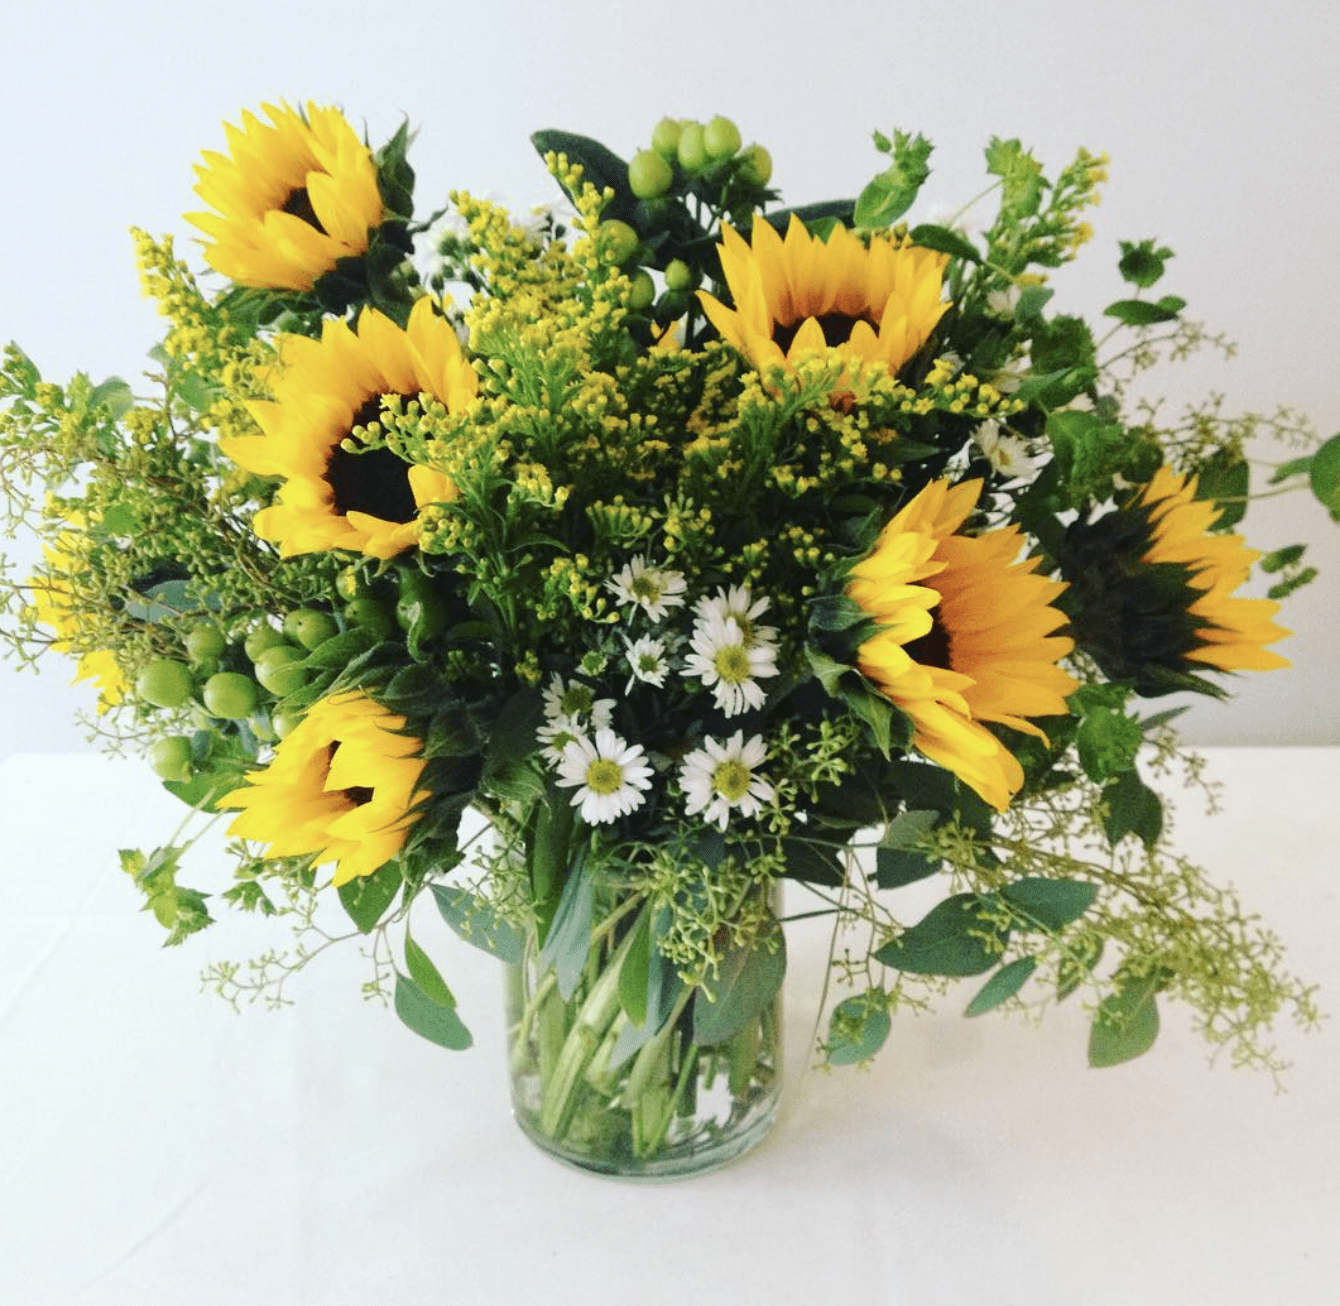 Sunflower arrangement in a glass vase.